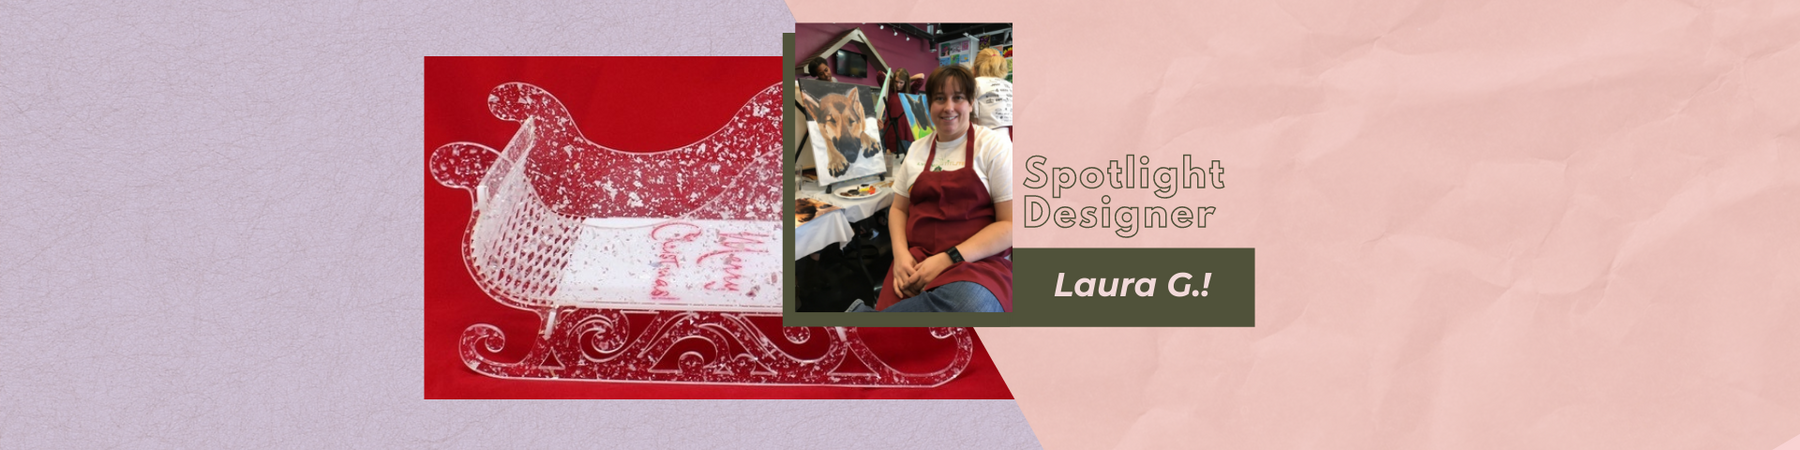 Spotlight Designer! Laura G.!